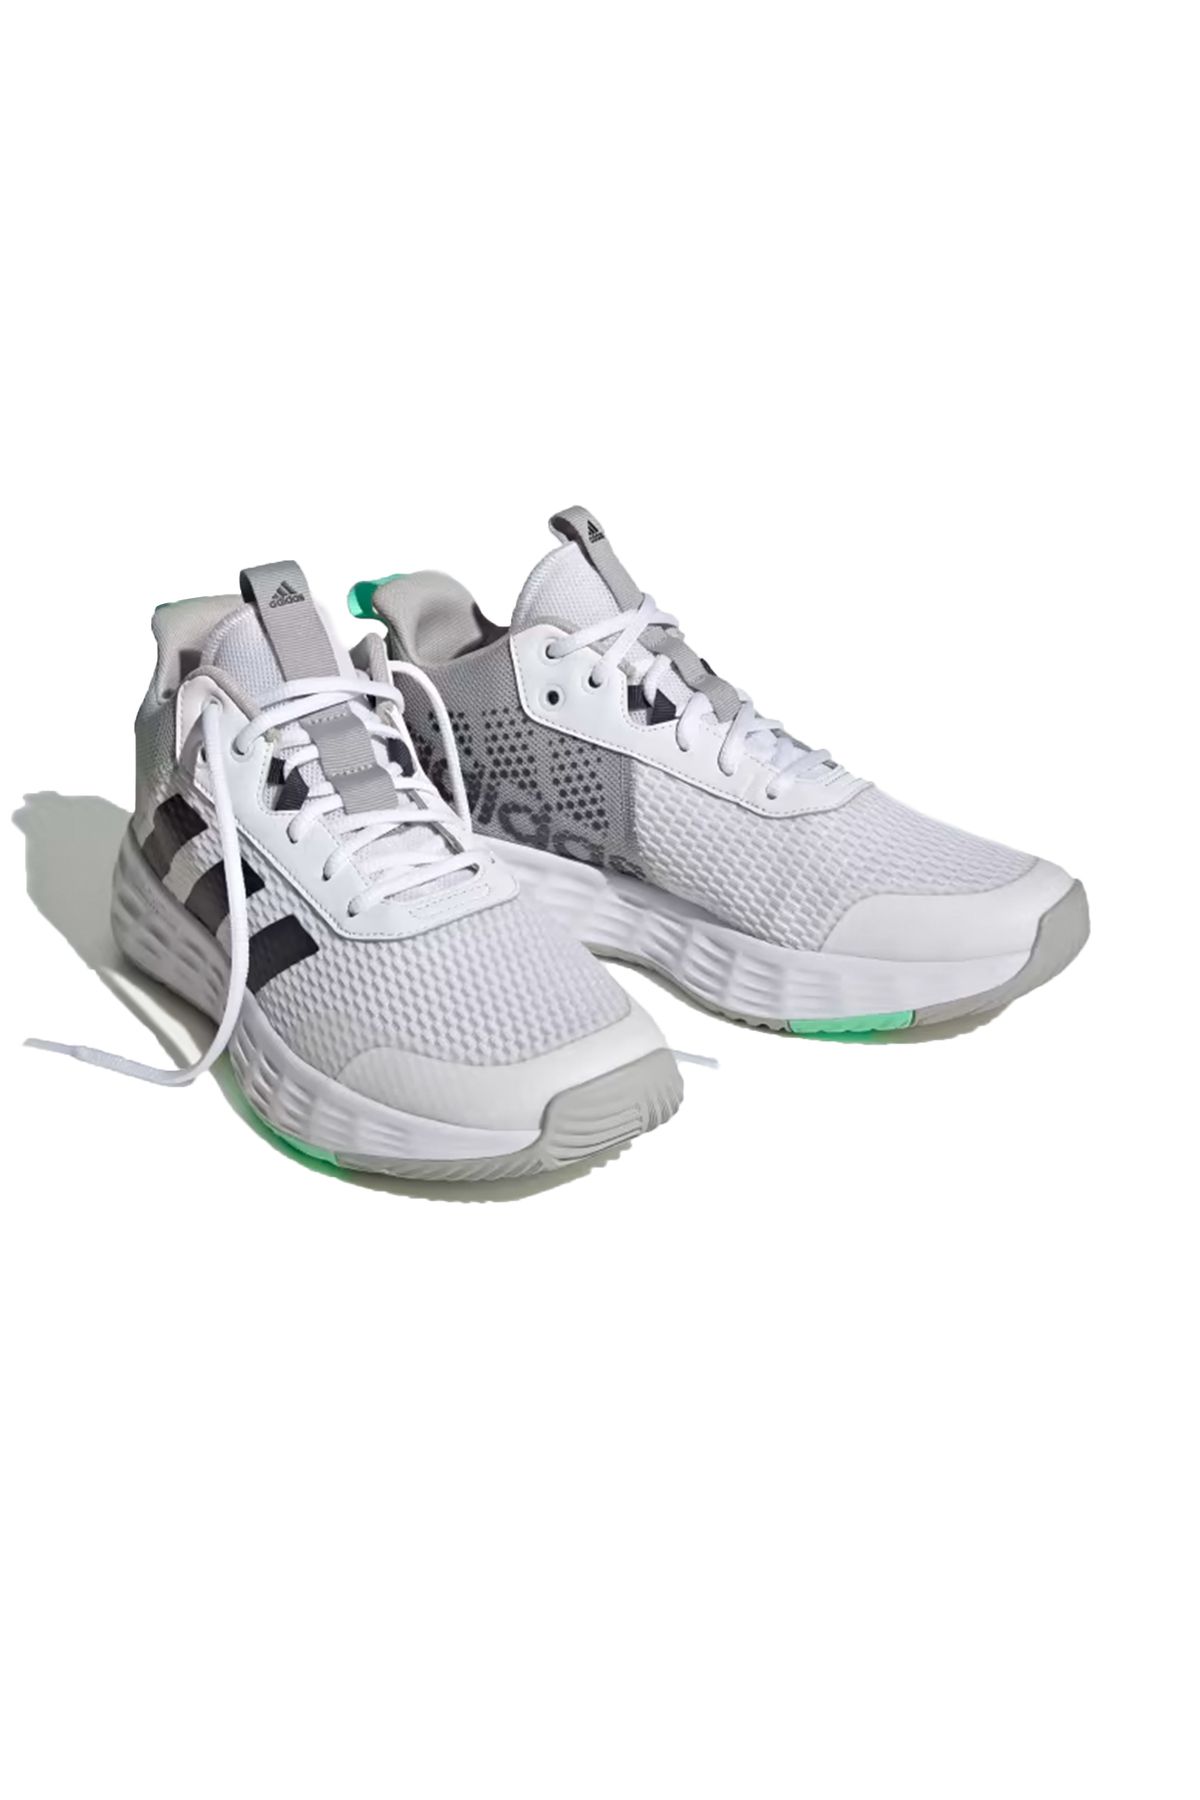 adidas Ownthegame 2.0 Erkek Basketbol Ayakkabısı HP7888 Beyaz